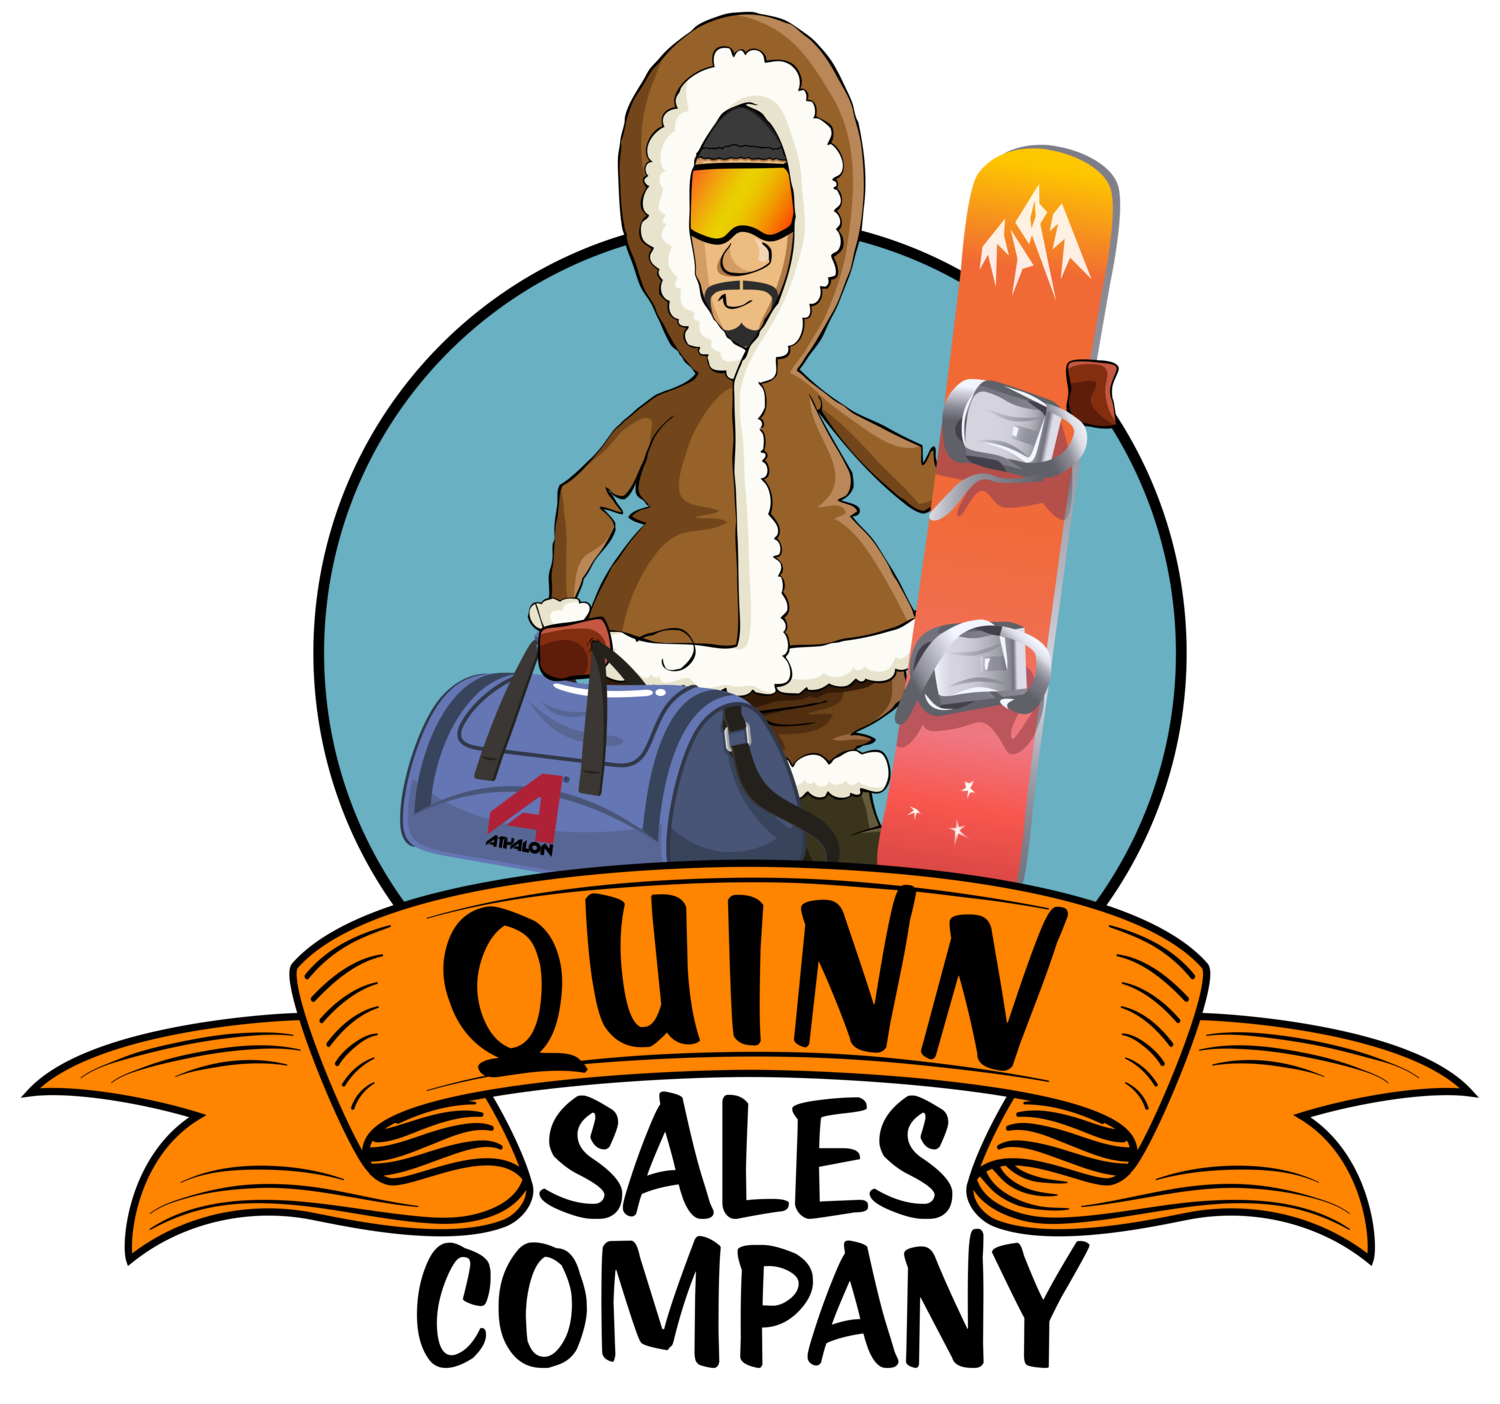 Quinn Sales Company 